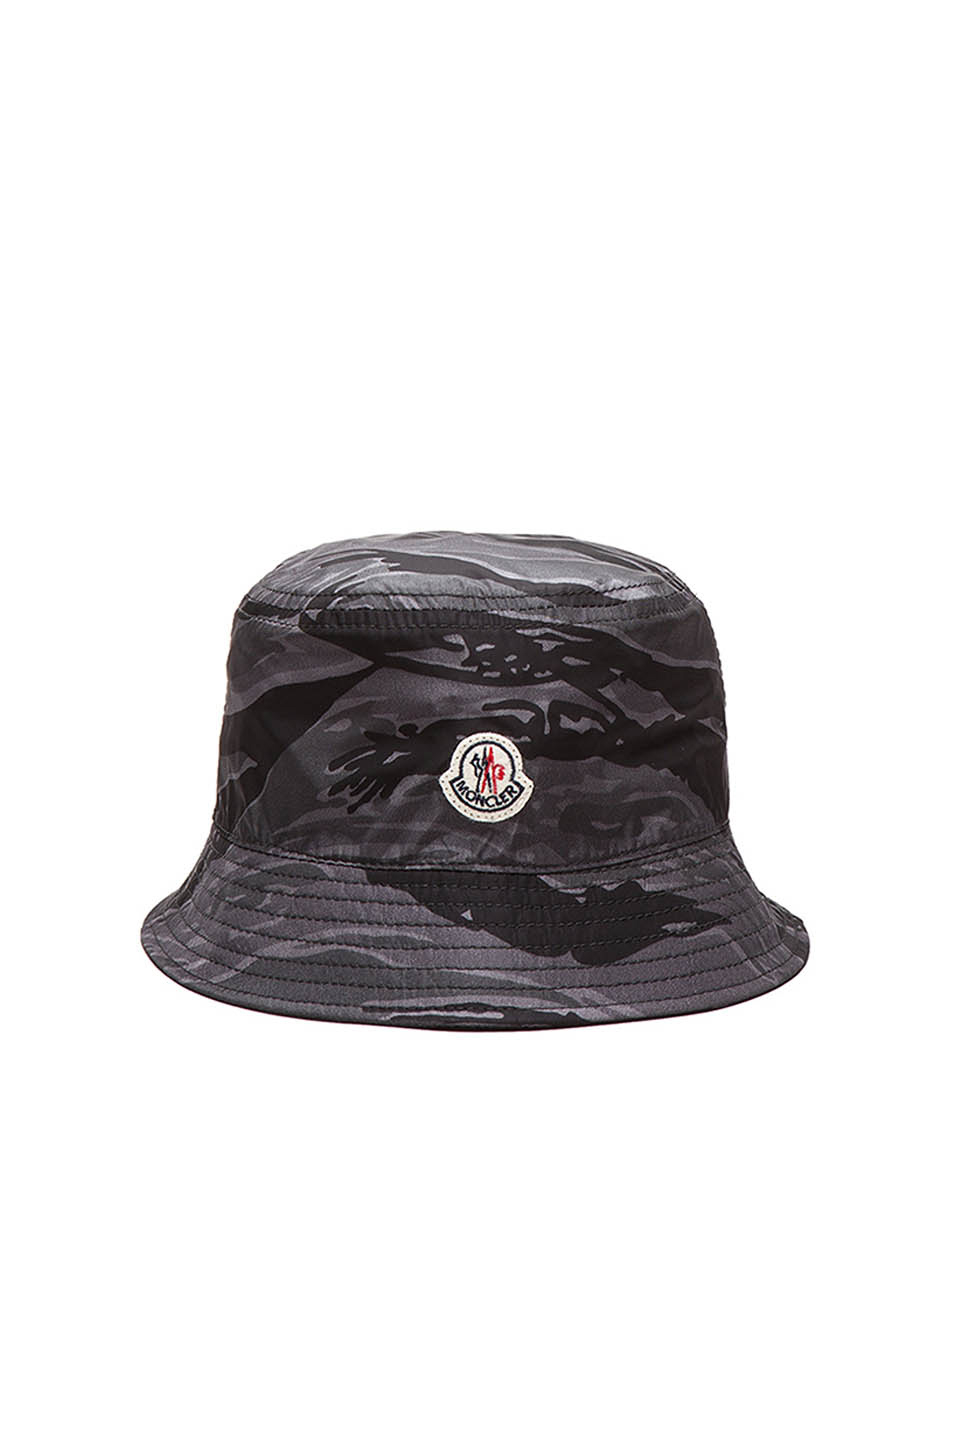 Moncler Summer Hat, Buy Now, Outlet, 52% OFF, www.dps.edu.pk